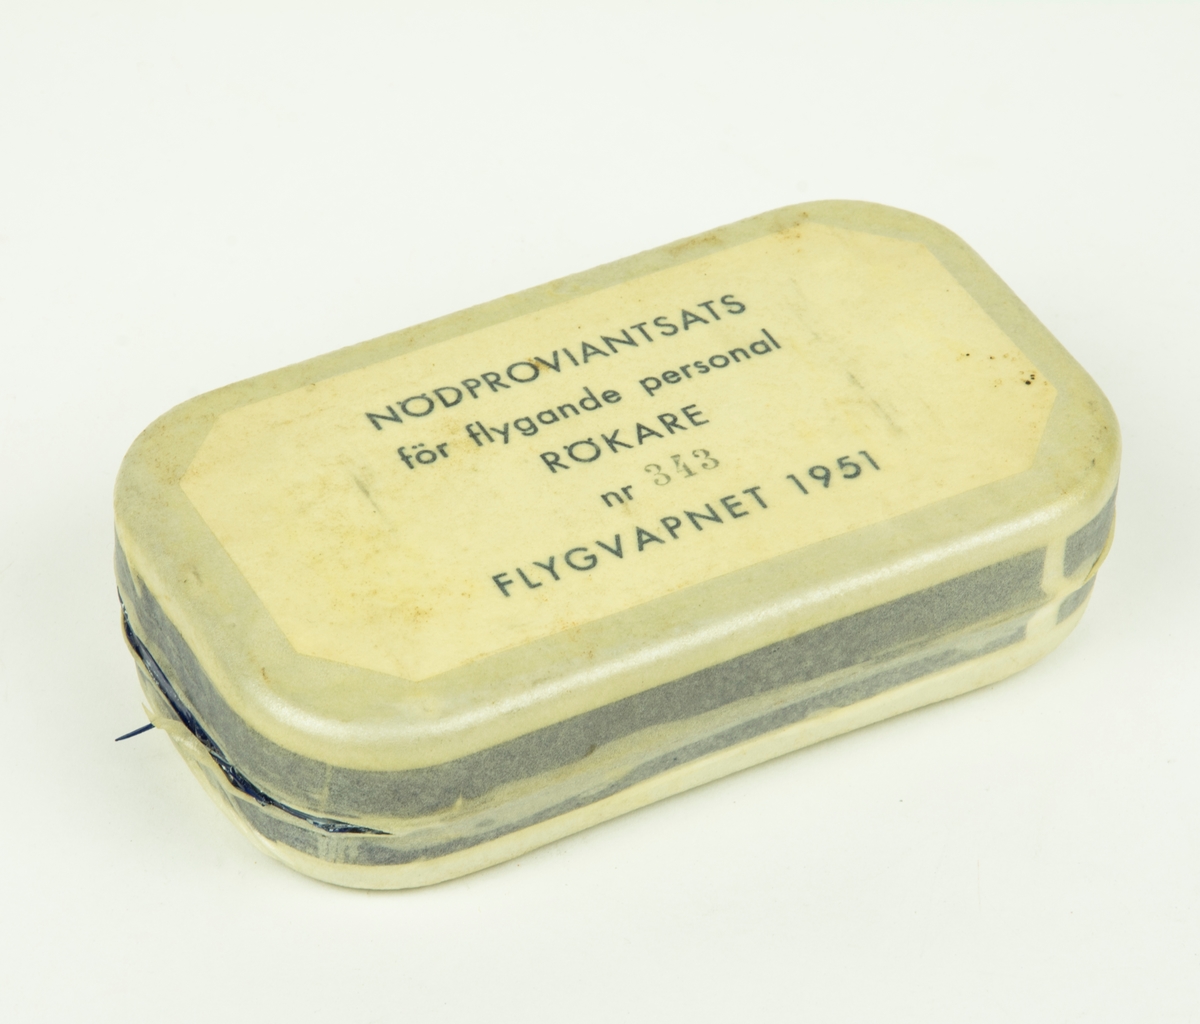 Ask till nödproviantsats för flygande personal, rökare packad 9/4 1951.